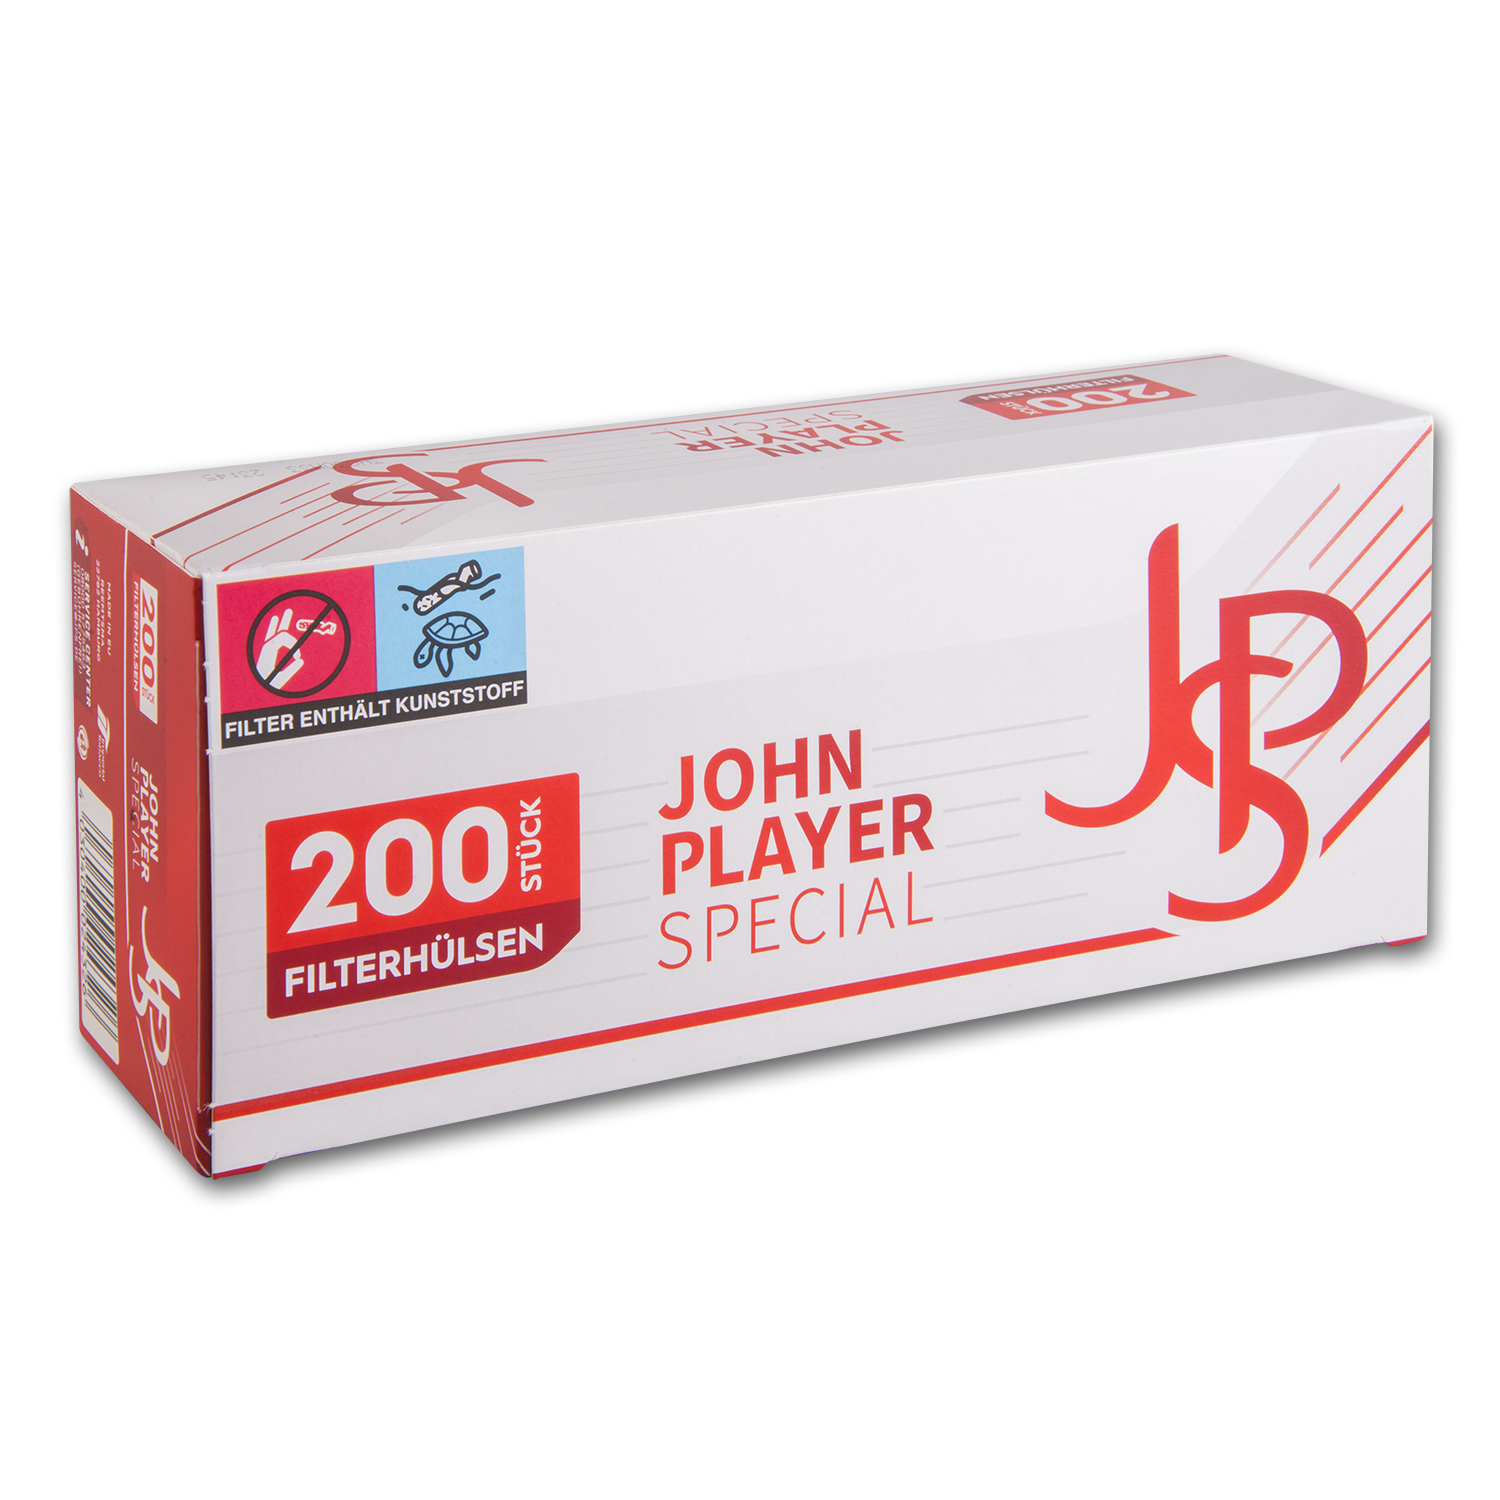 JPS Filterhülsen (5) 200 Stück Packung